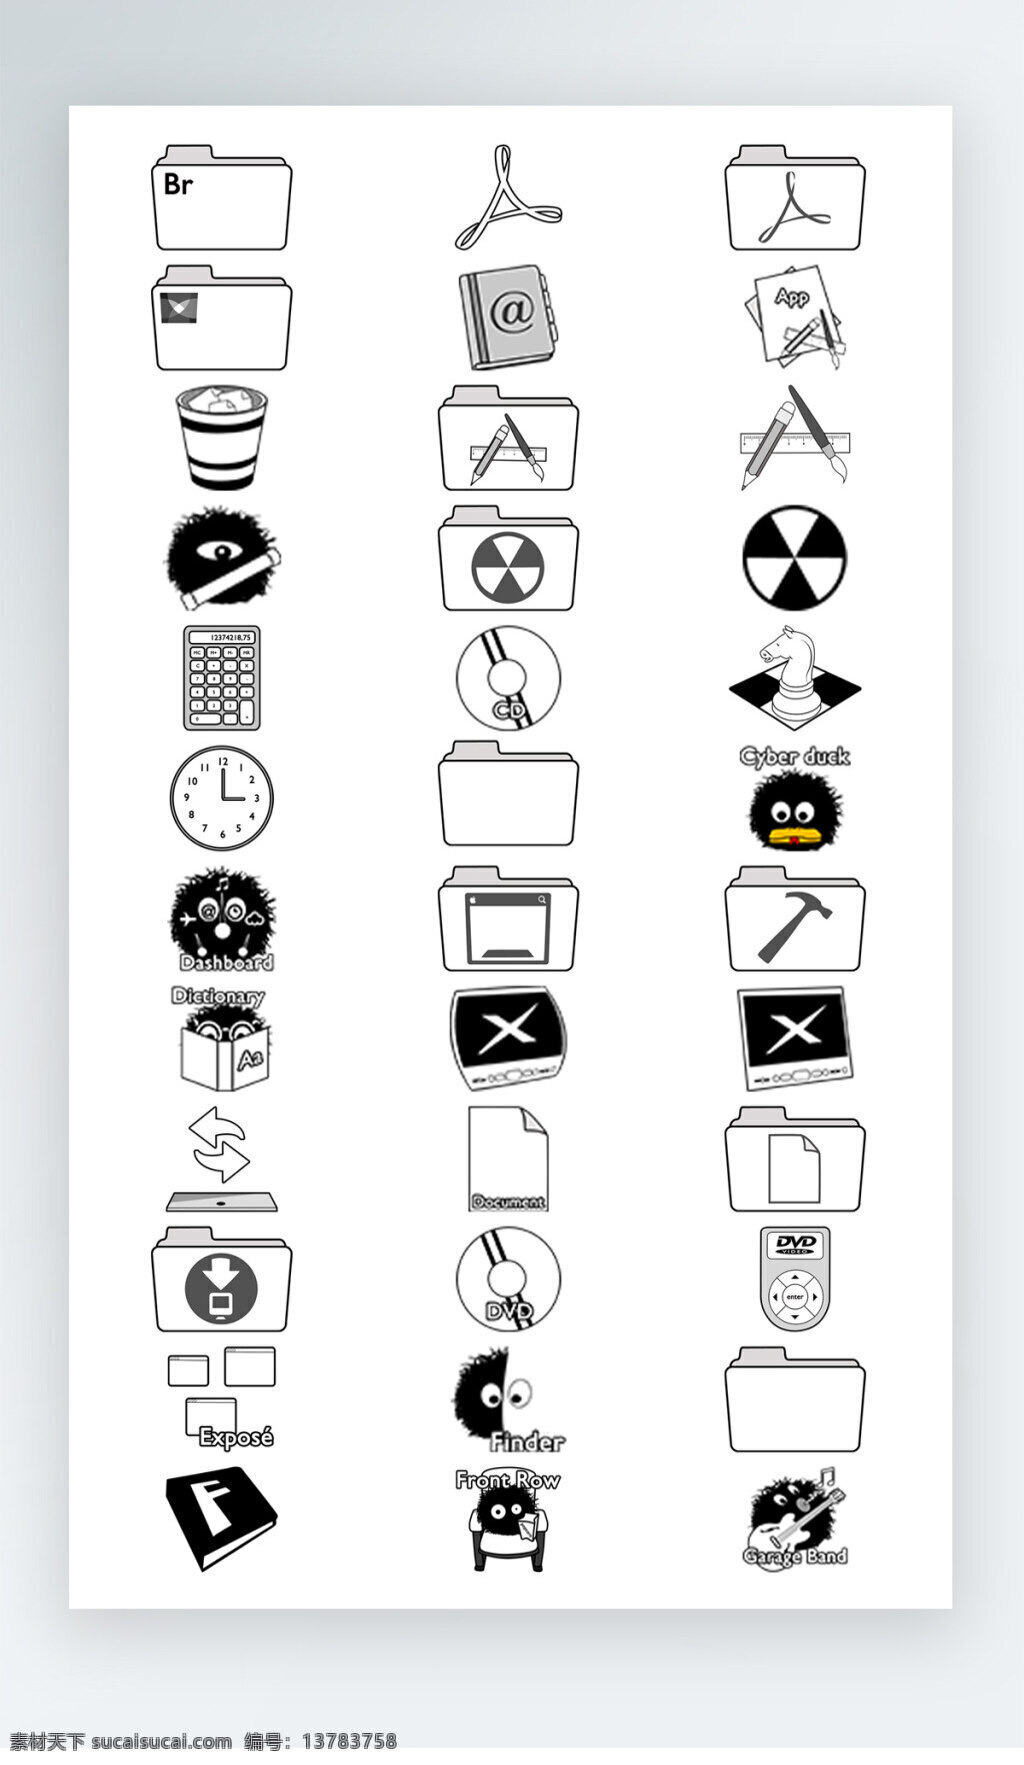 软件 工具 图标 黑白 iconpng 软件工具图标 黑白图标 icon 时钟图标